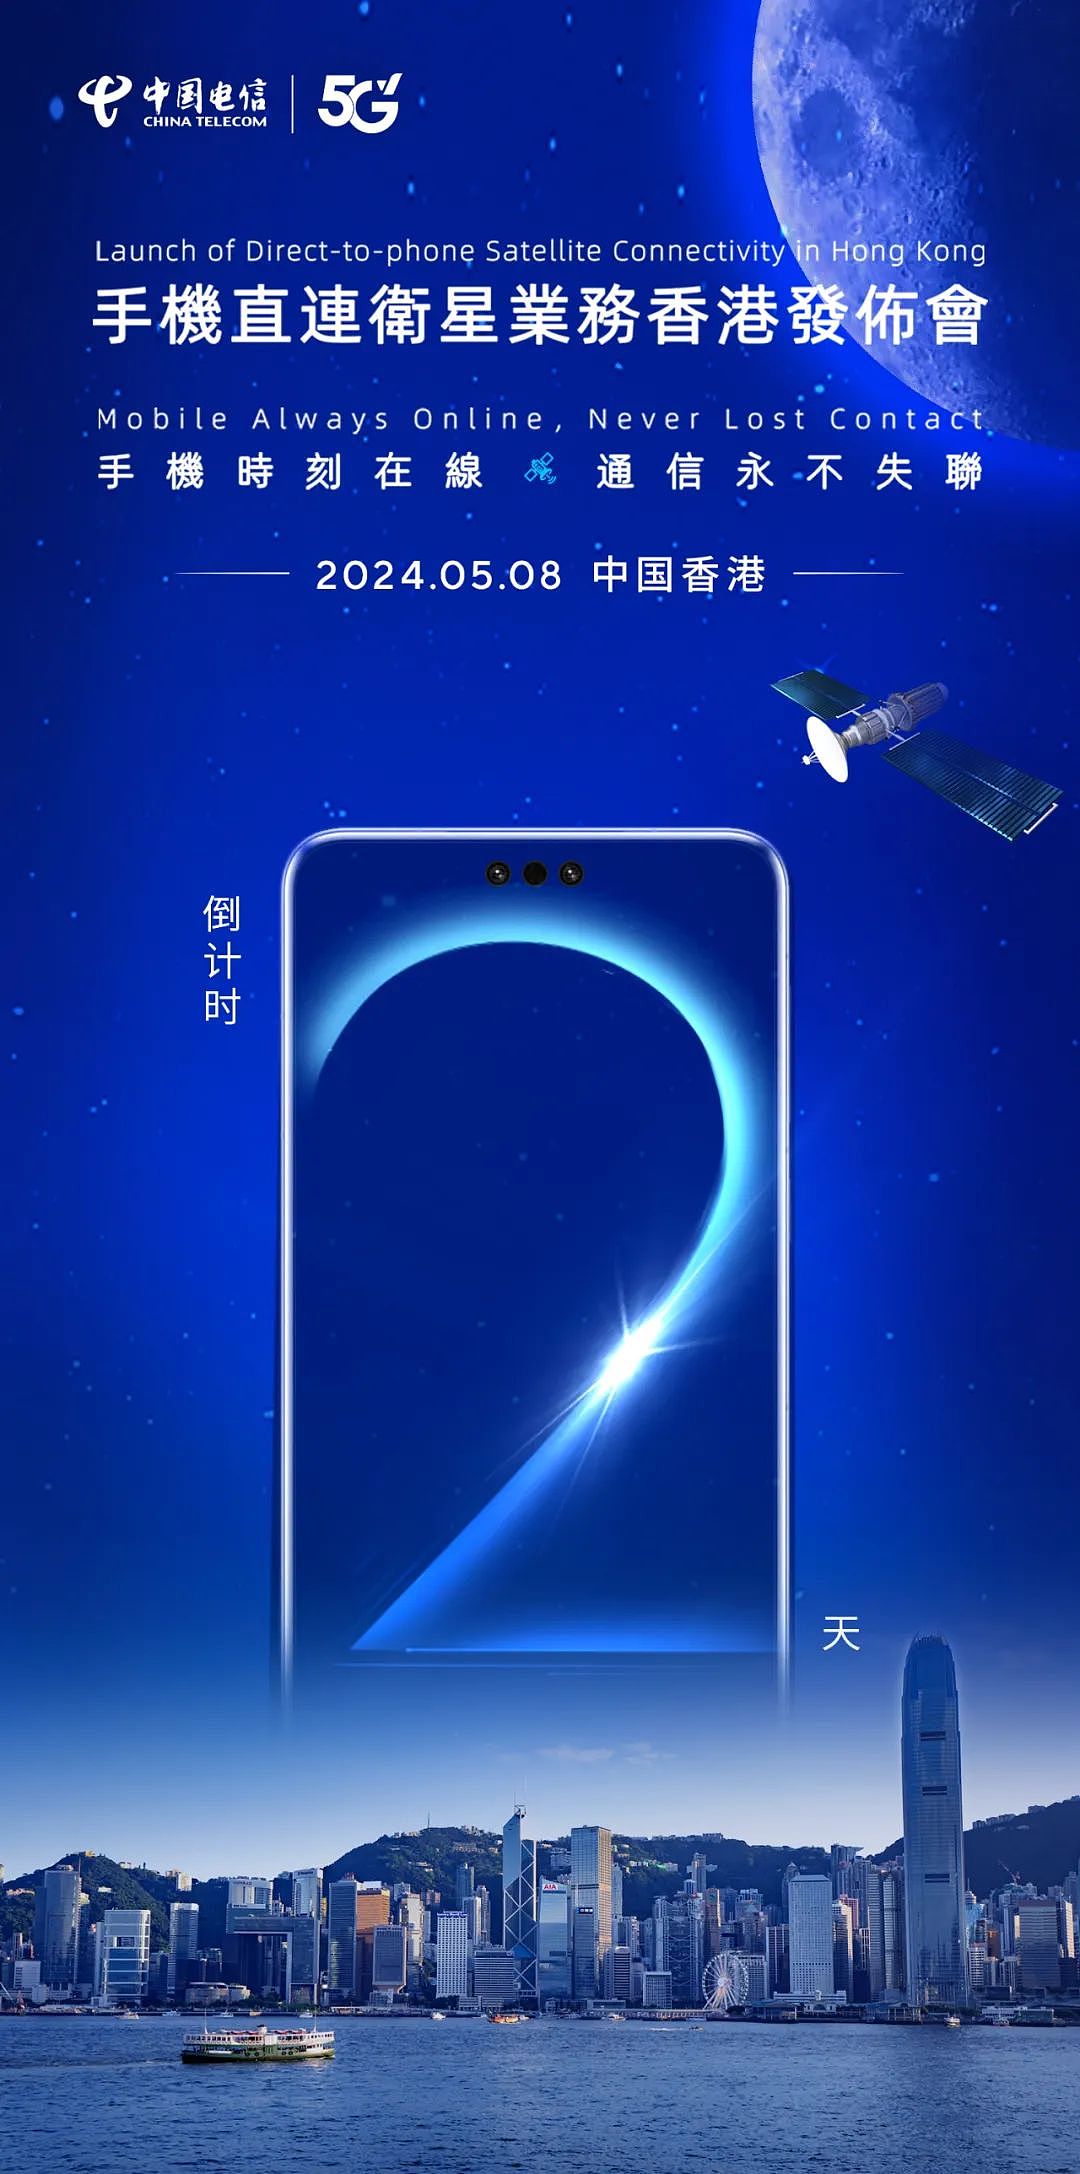 中国电信手机直连卫星业务香港发布会 5 月 8 日举行 - 1